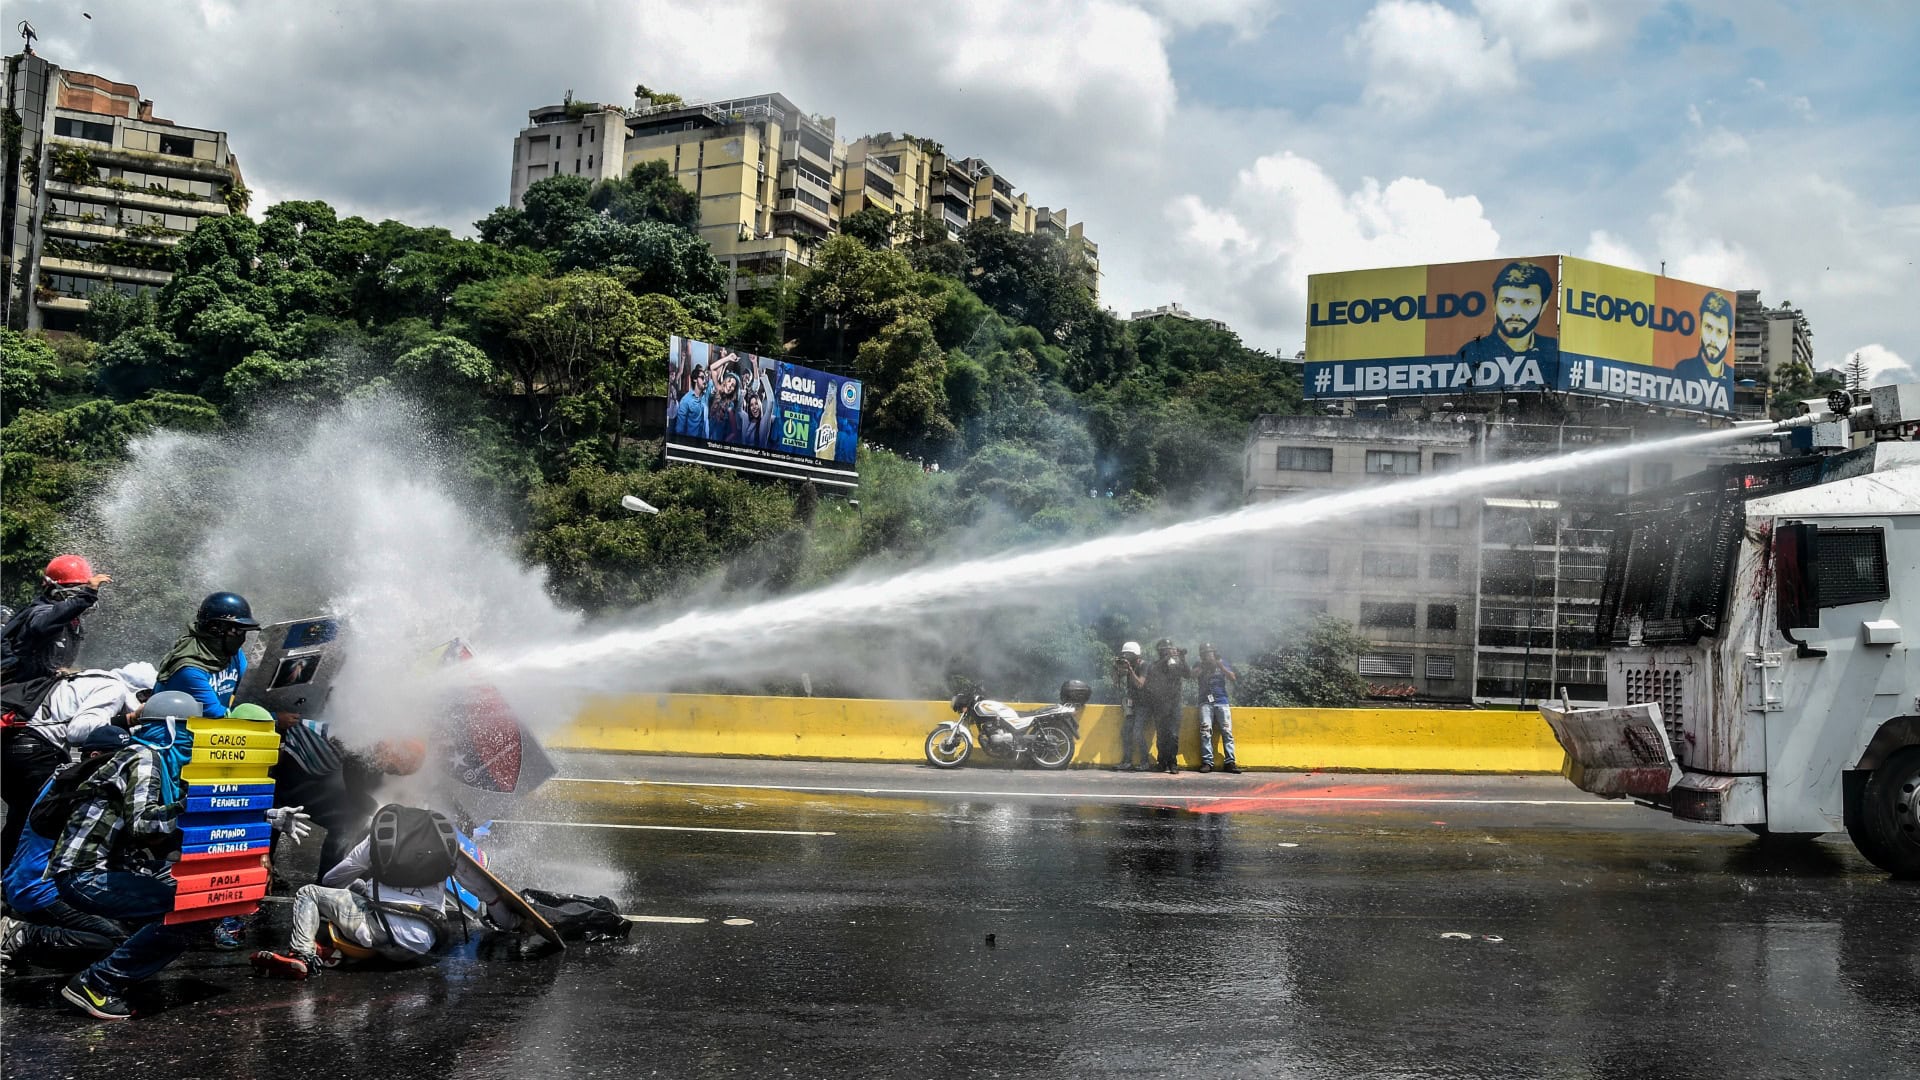 Nueva ola de violencia y represión contra los manifestantes en Venezuela